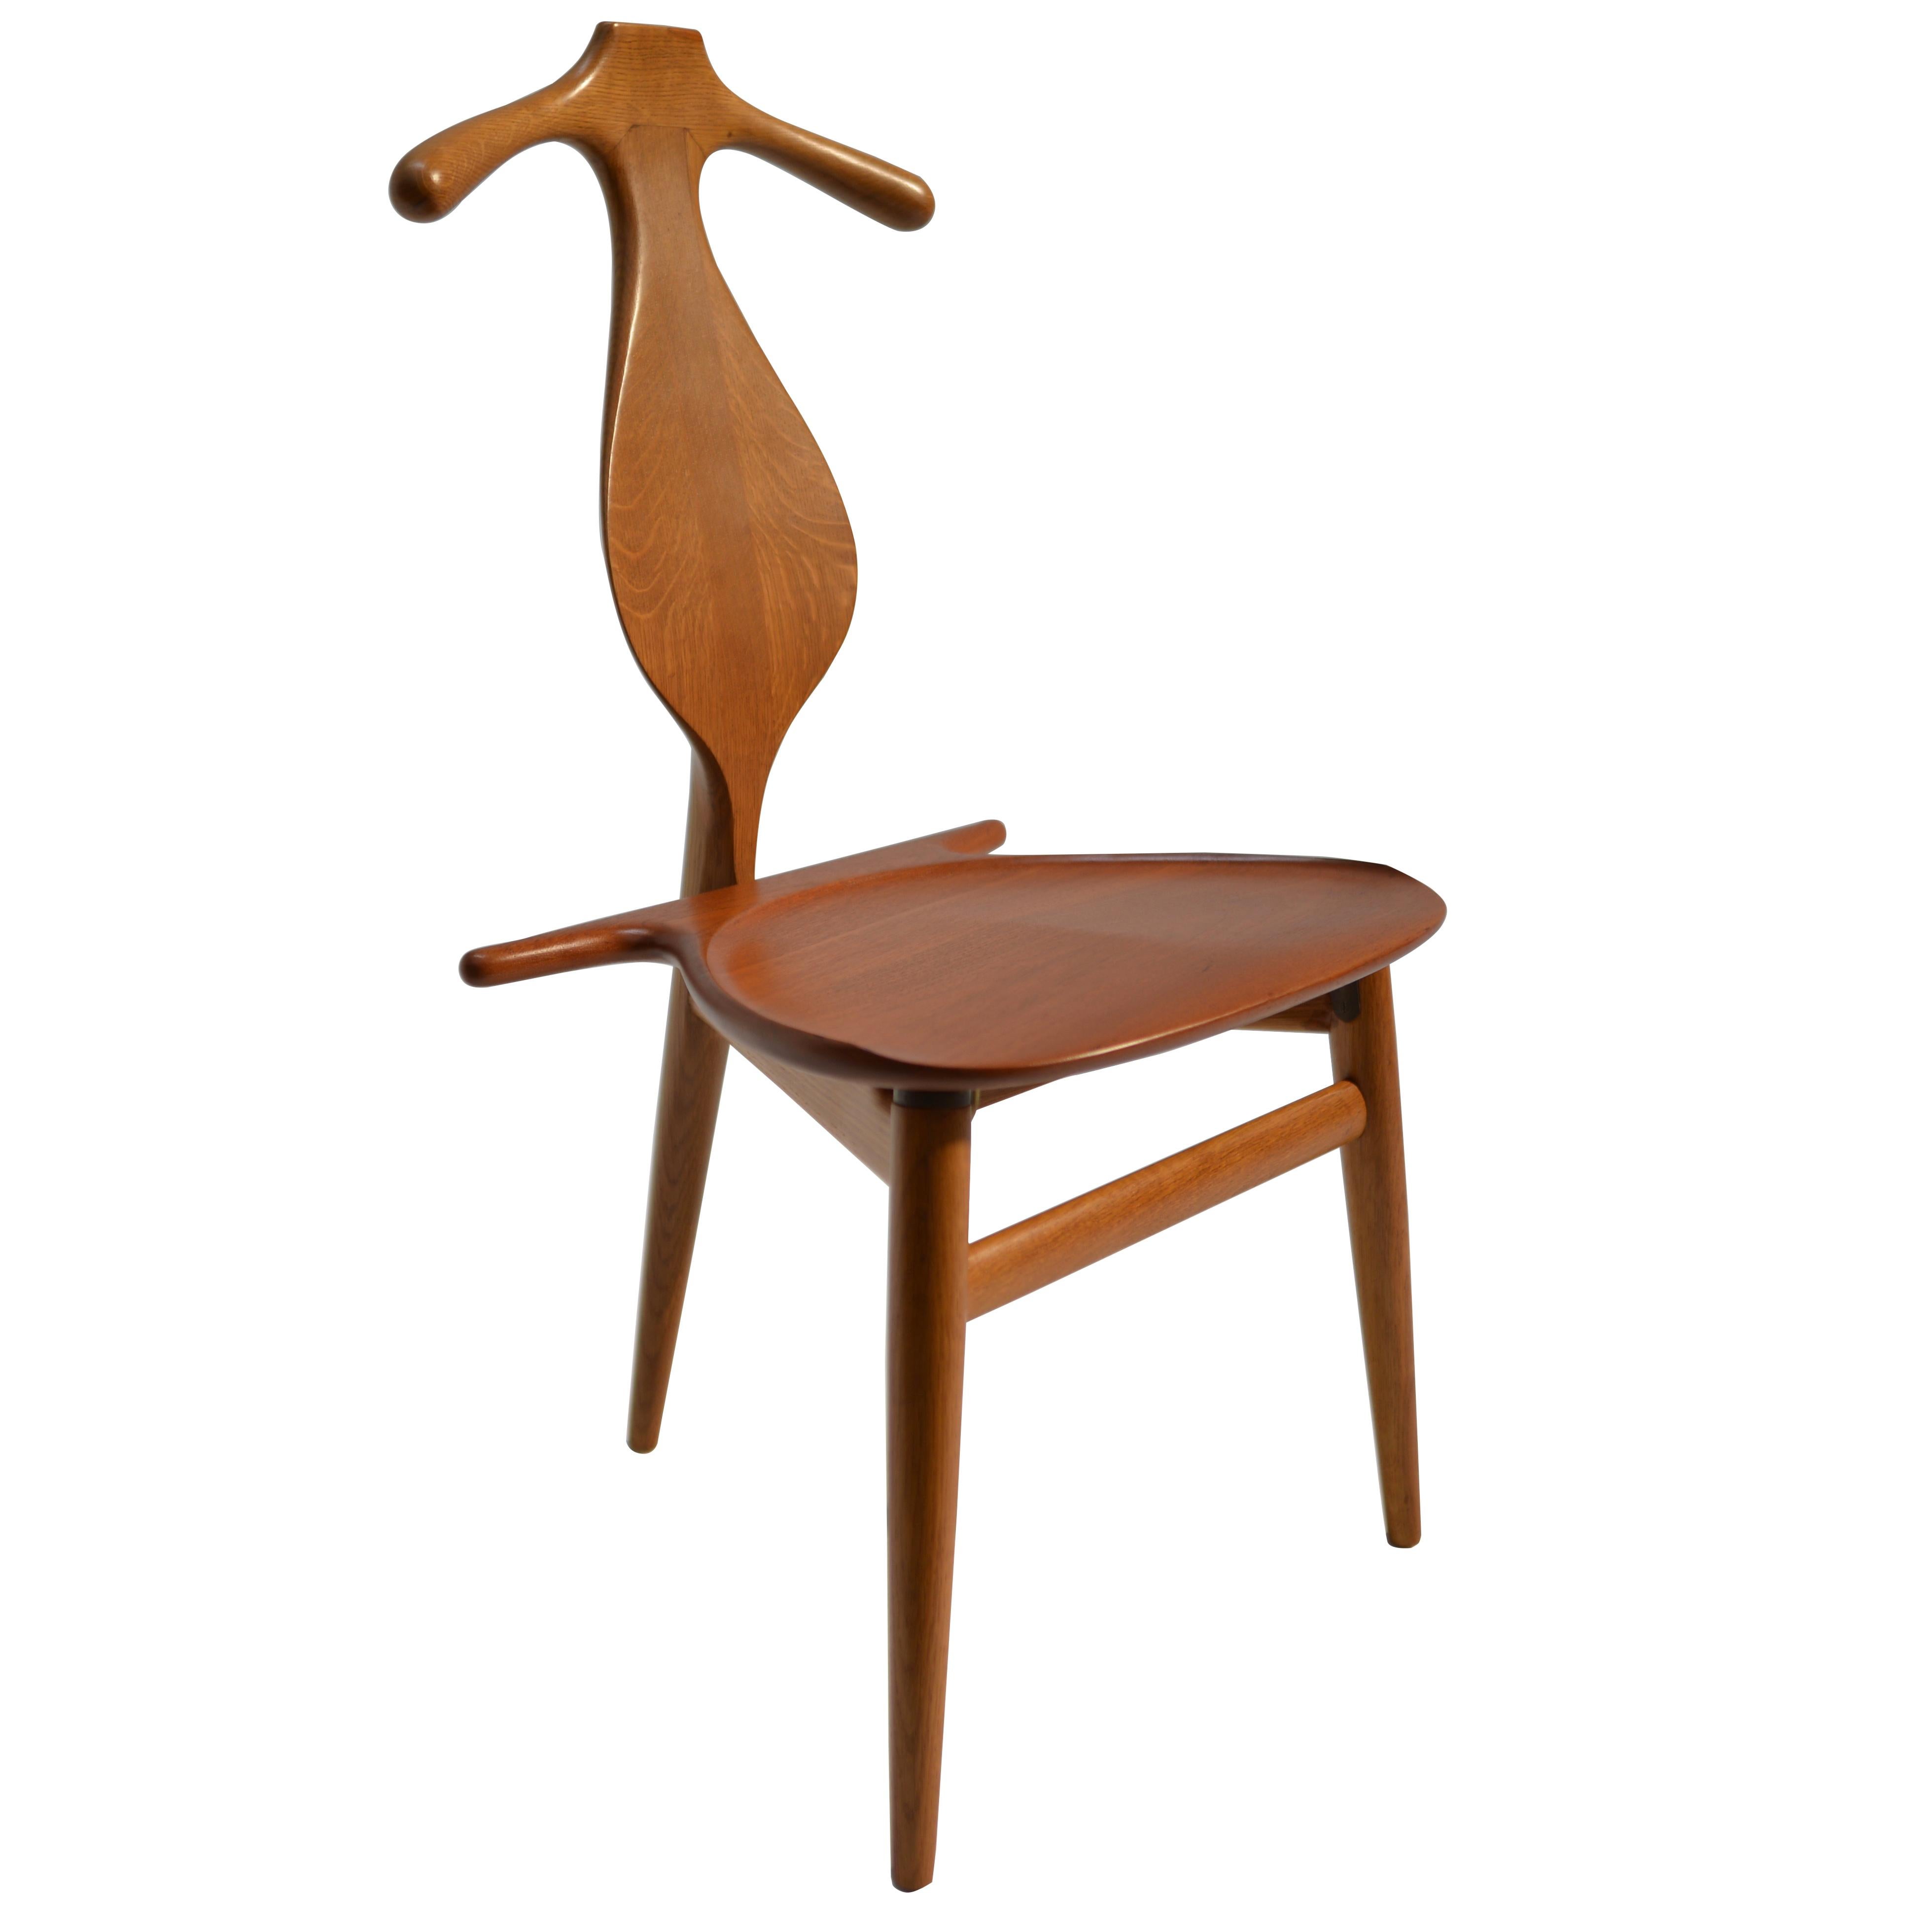 Original and Rare Hans Wegner "Valet" Chair for Johannes Hansen, Denmark, 1953